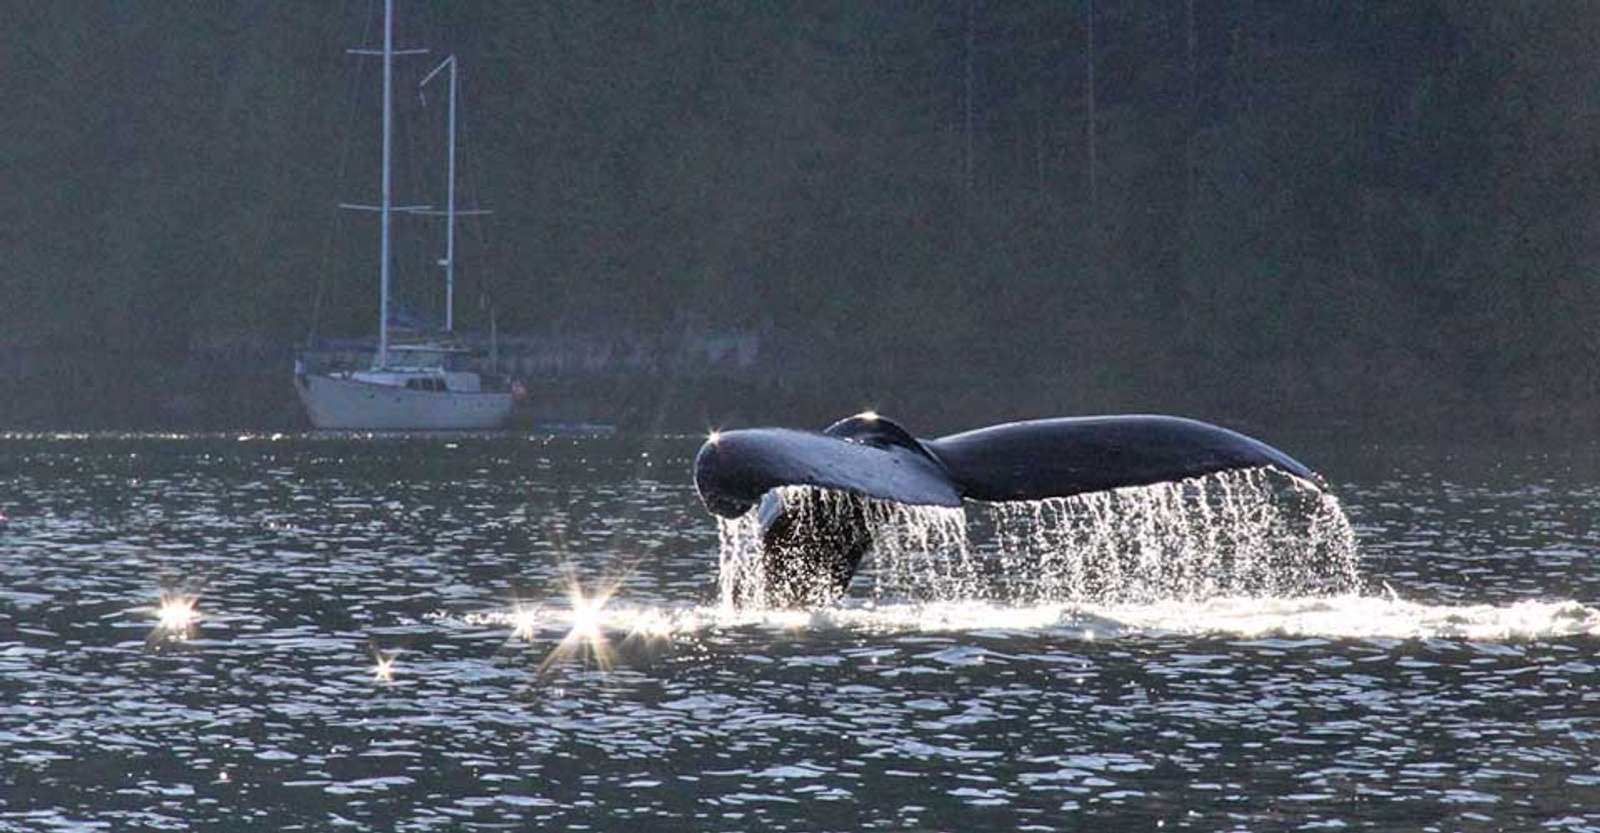 Humpback whale tail, Bishop Bay, British Columbia.